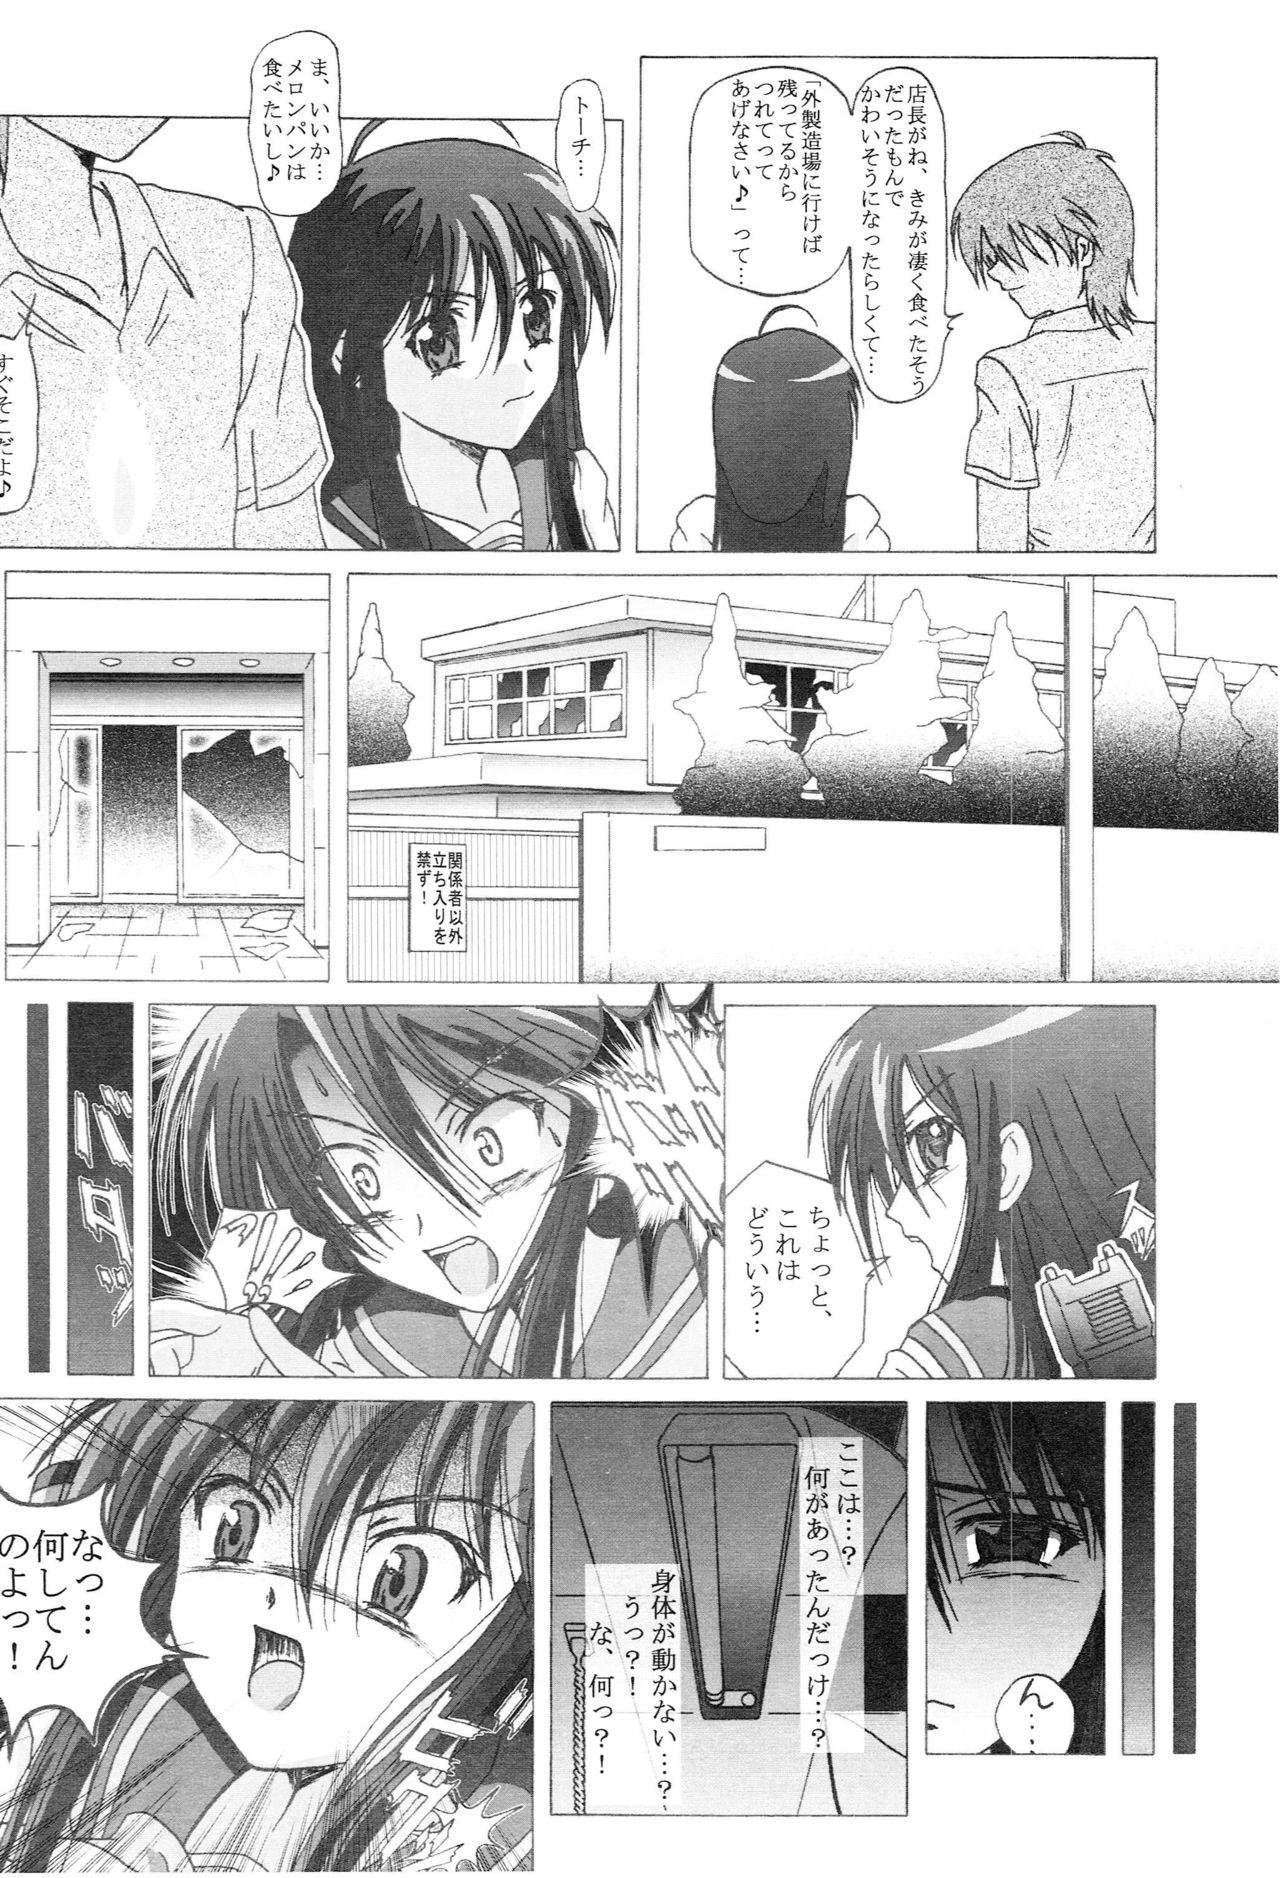 Culos Seinen Hana to Ribon 14 - Shakugan no shana Cam Sex - Page 5